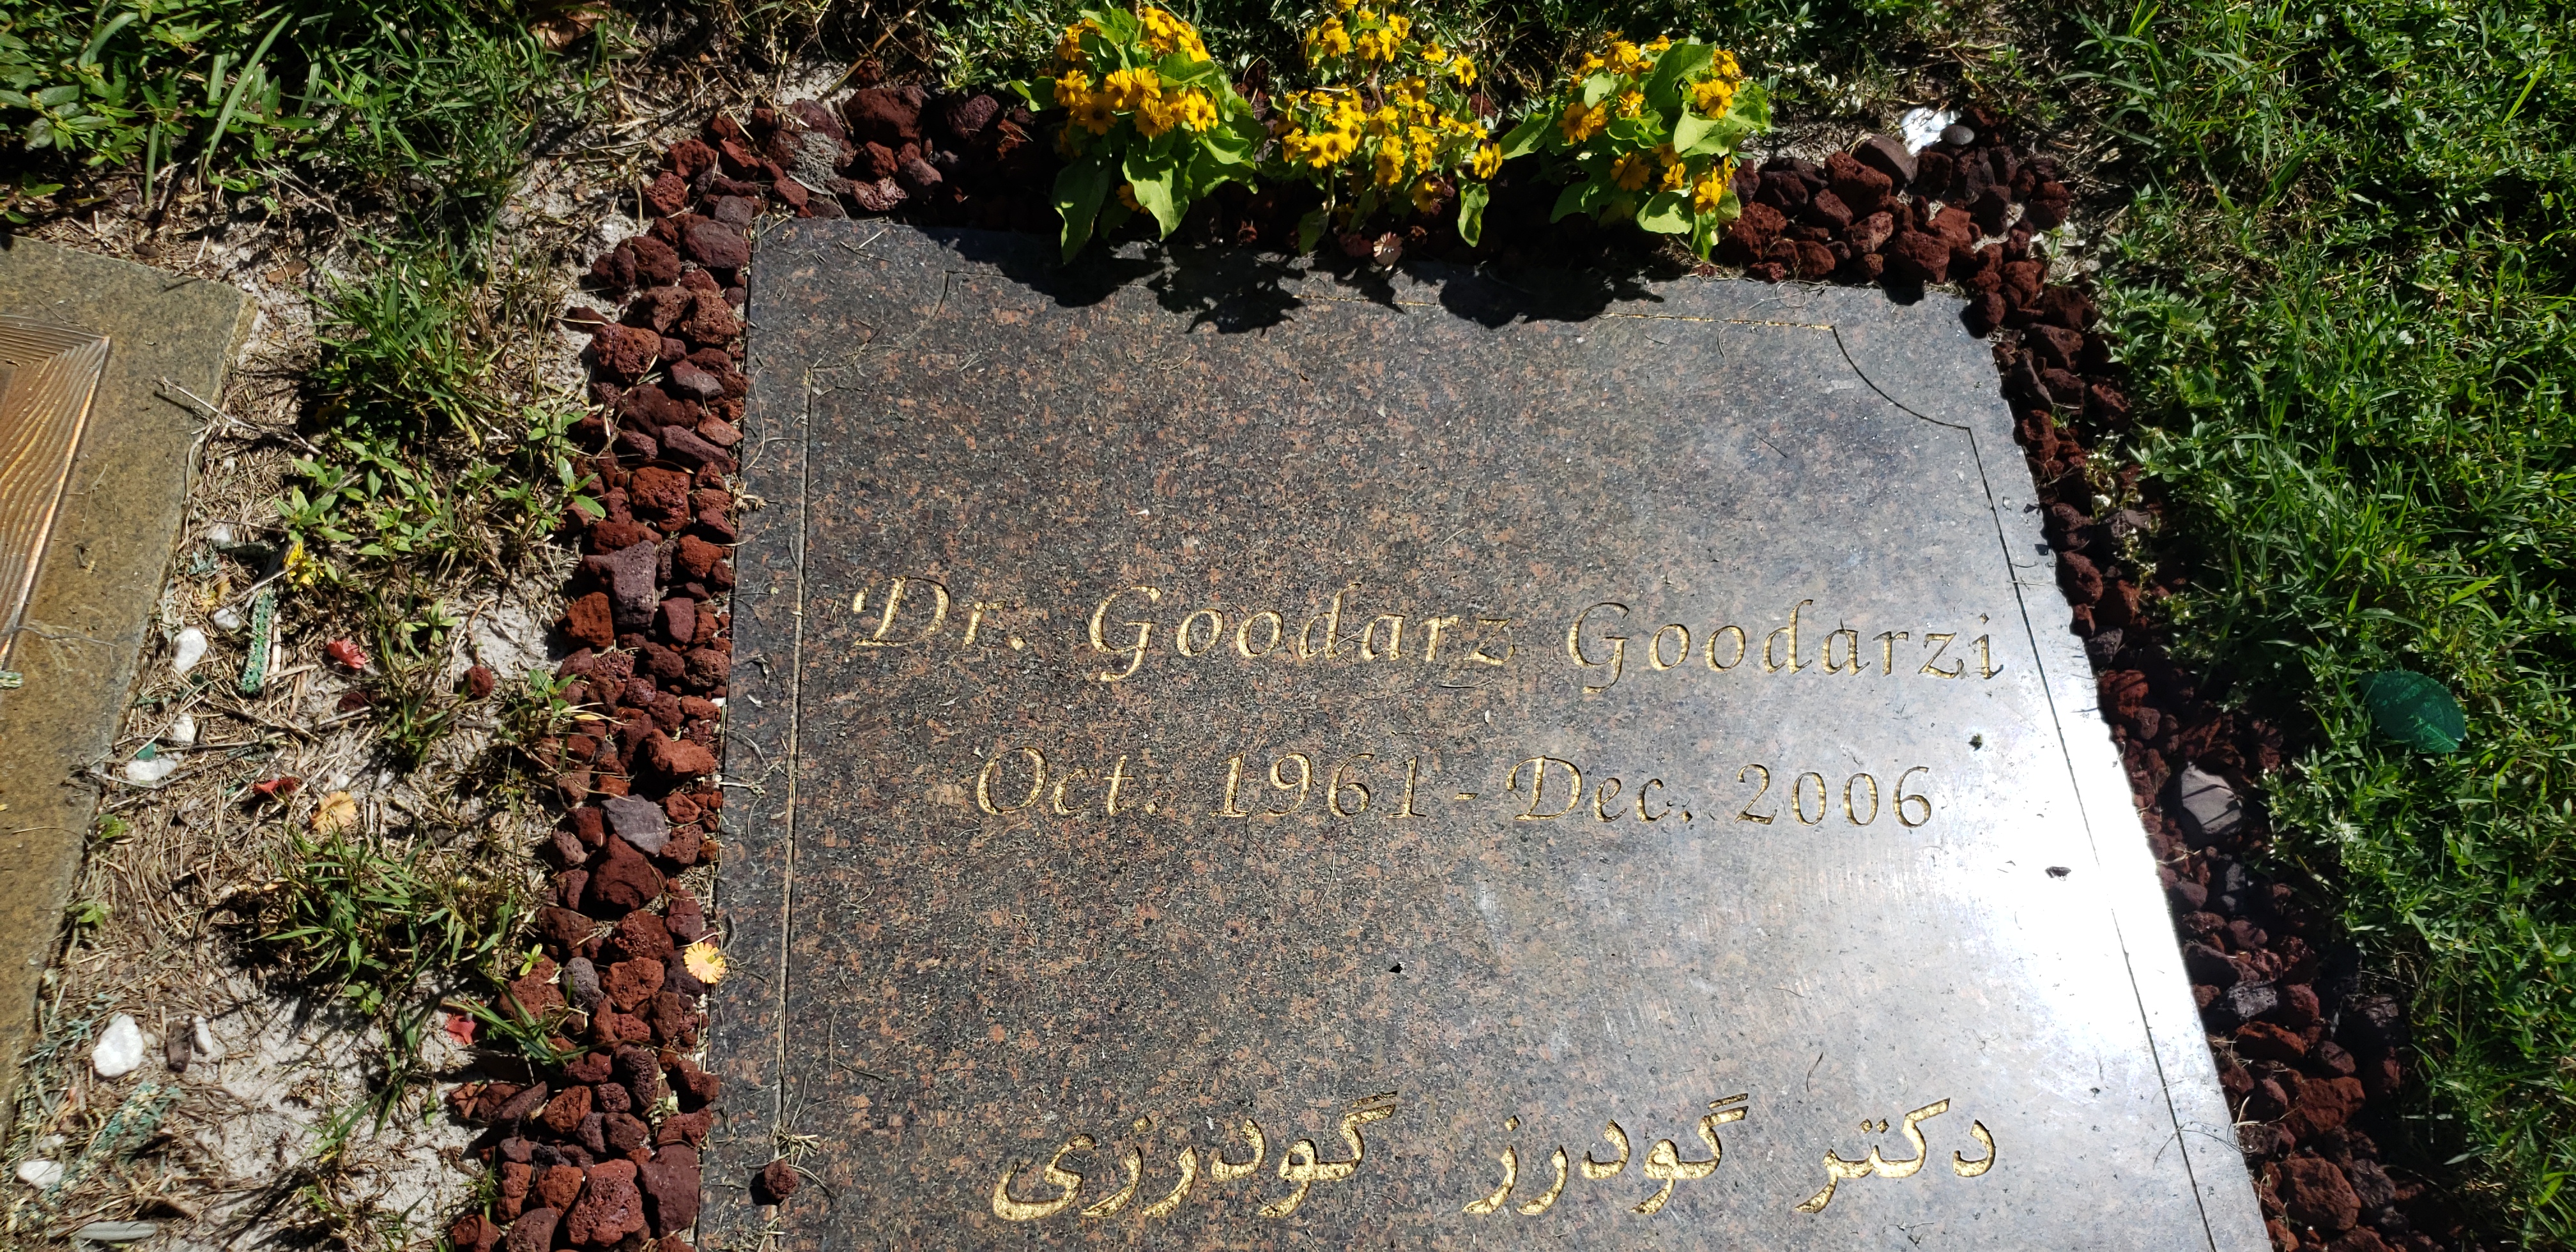 Dr Goodarz Goodarzi